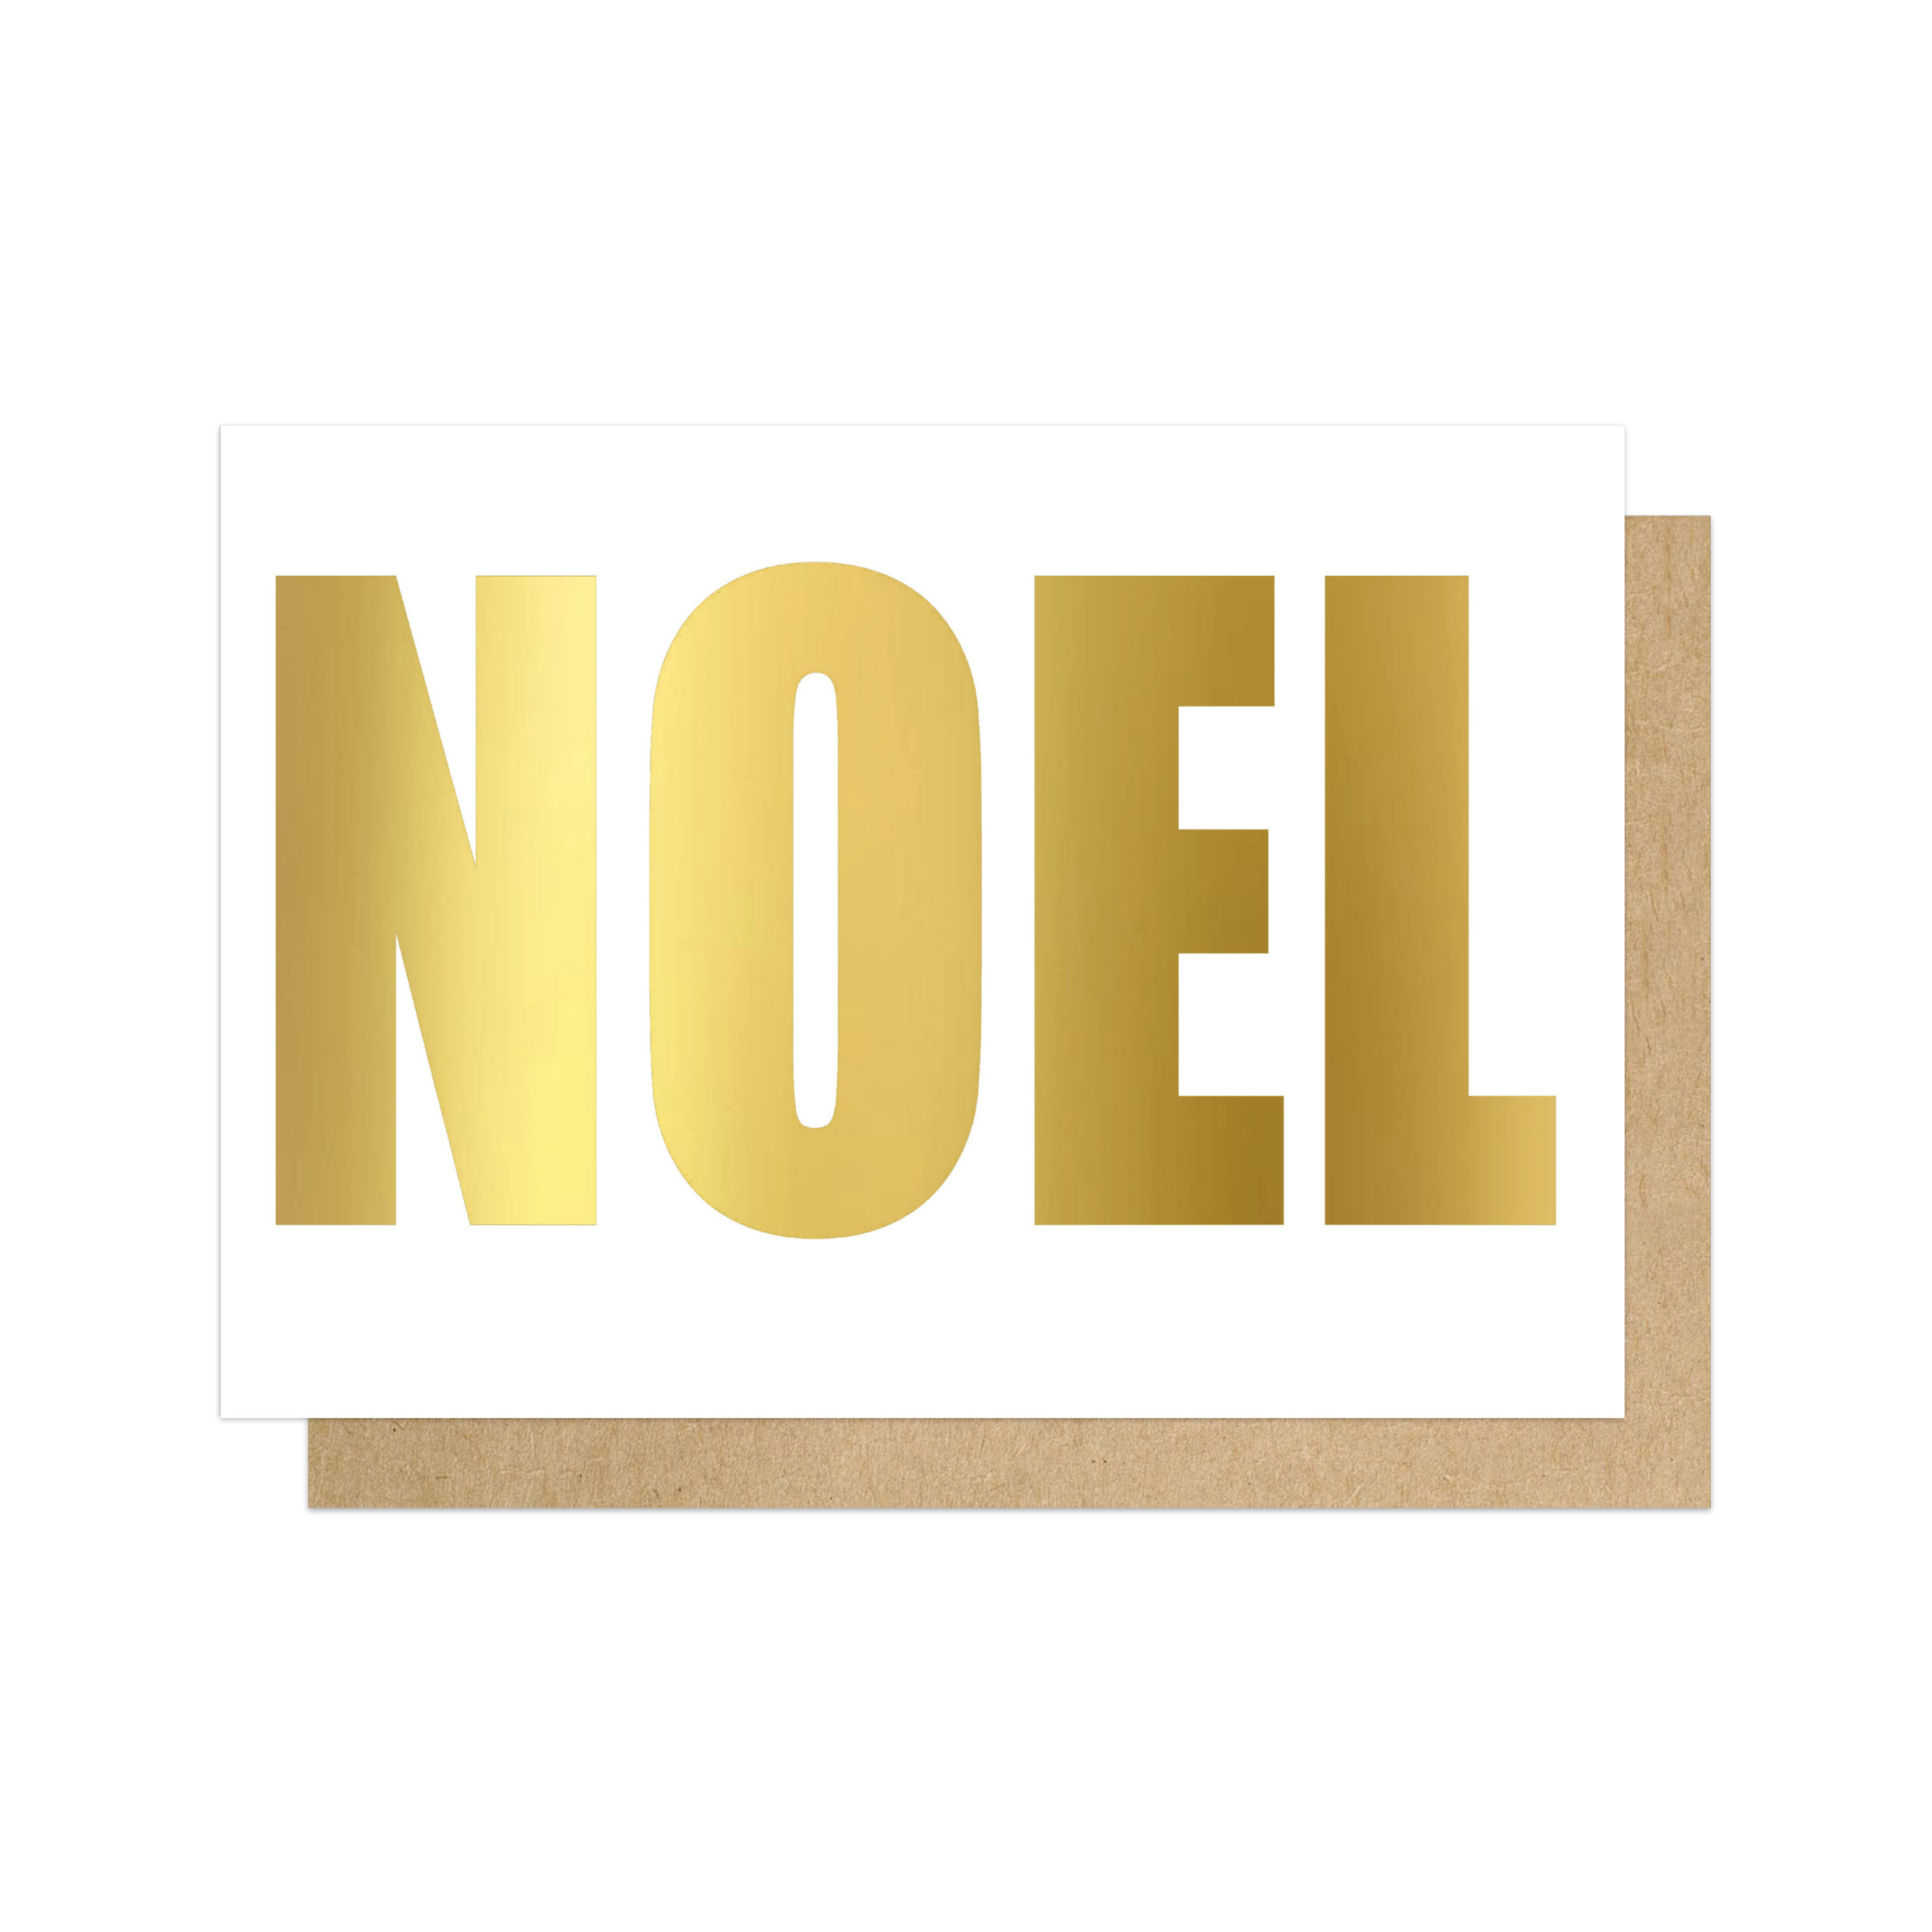 Noel card by EEP